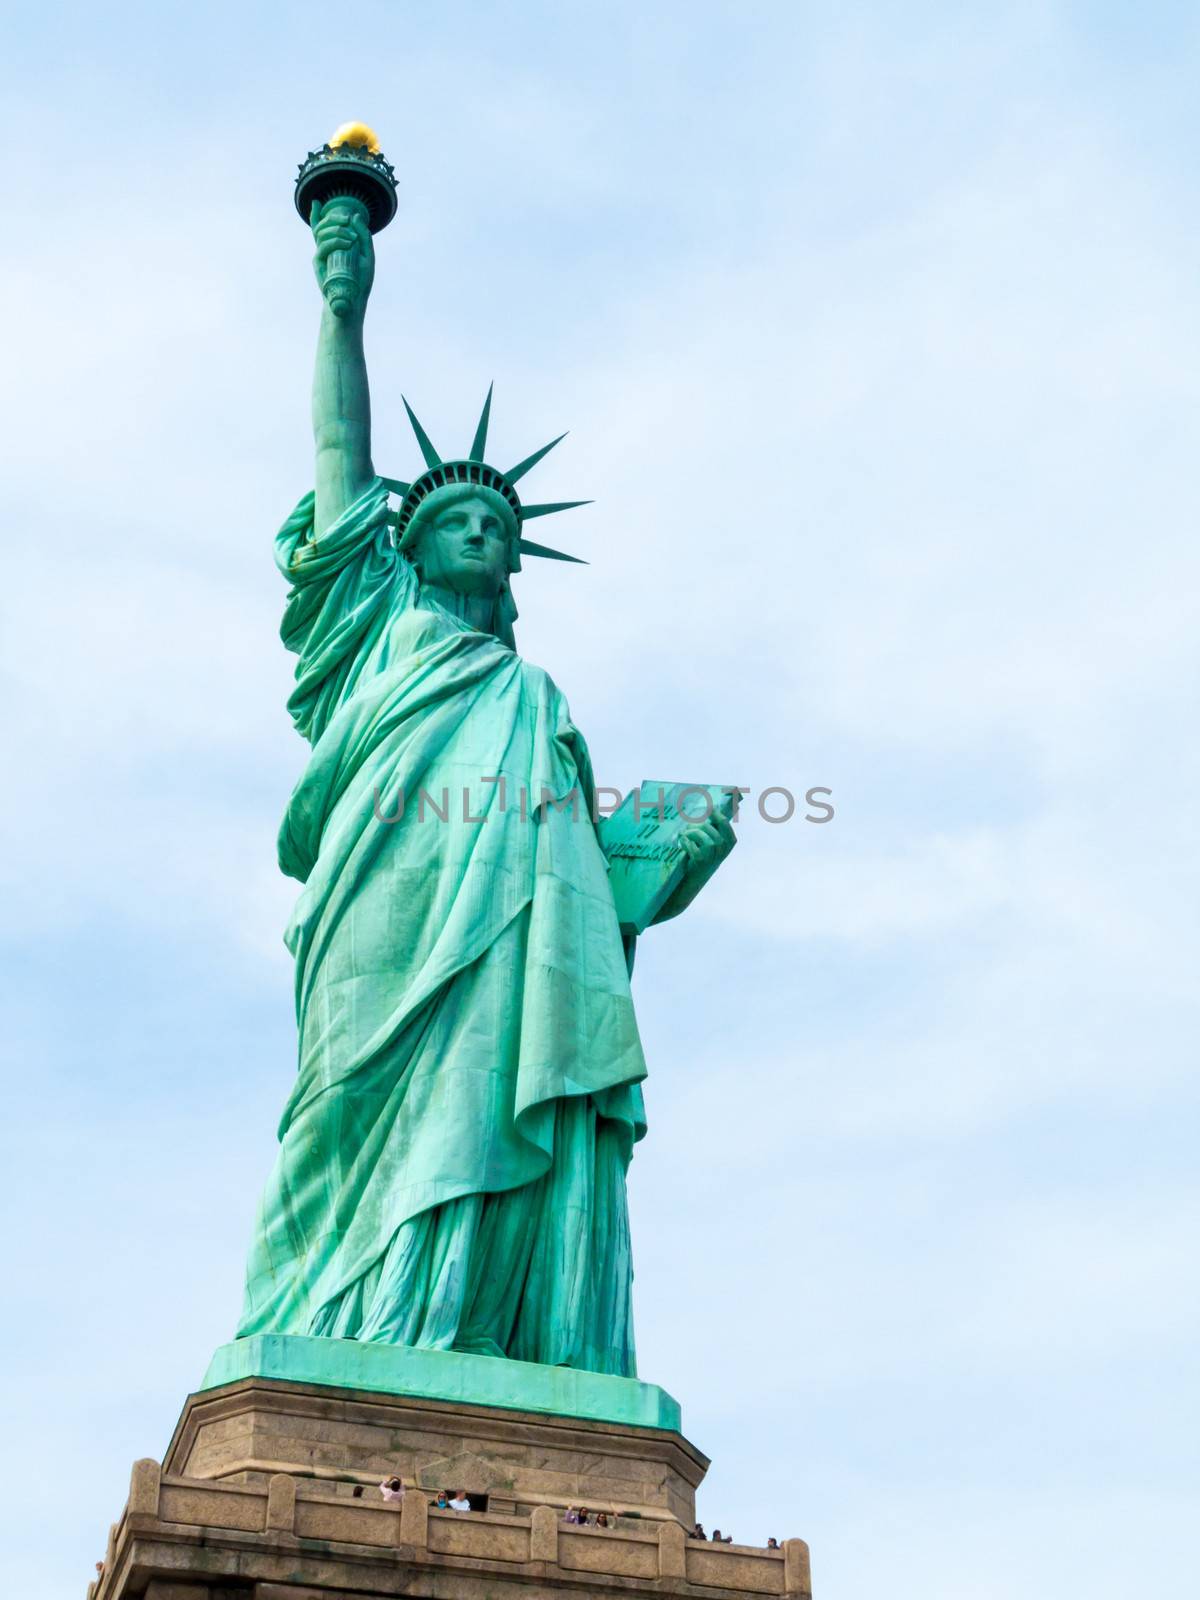 Statue of Liberty by Jule_Berlin